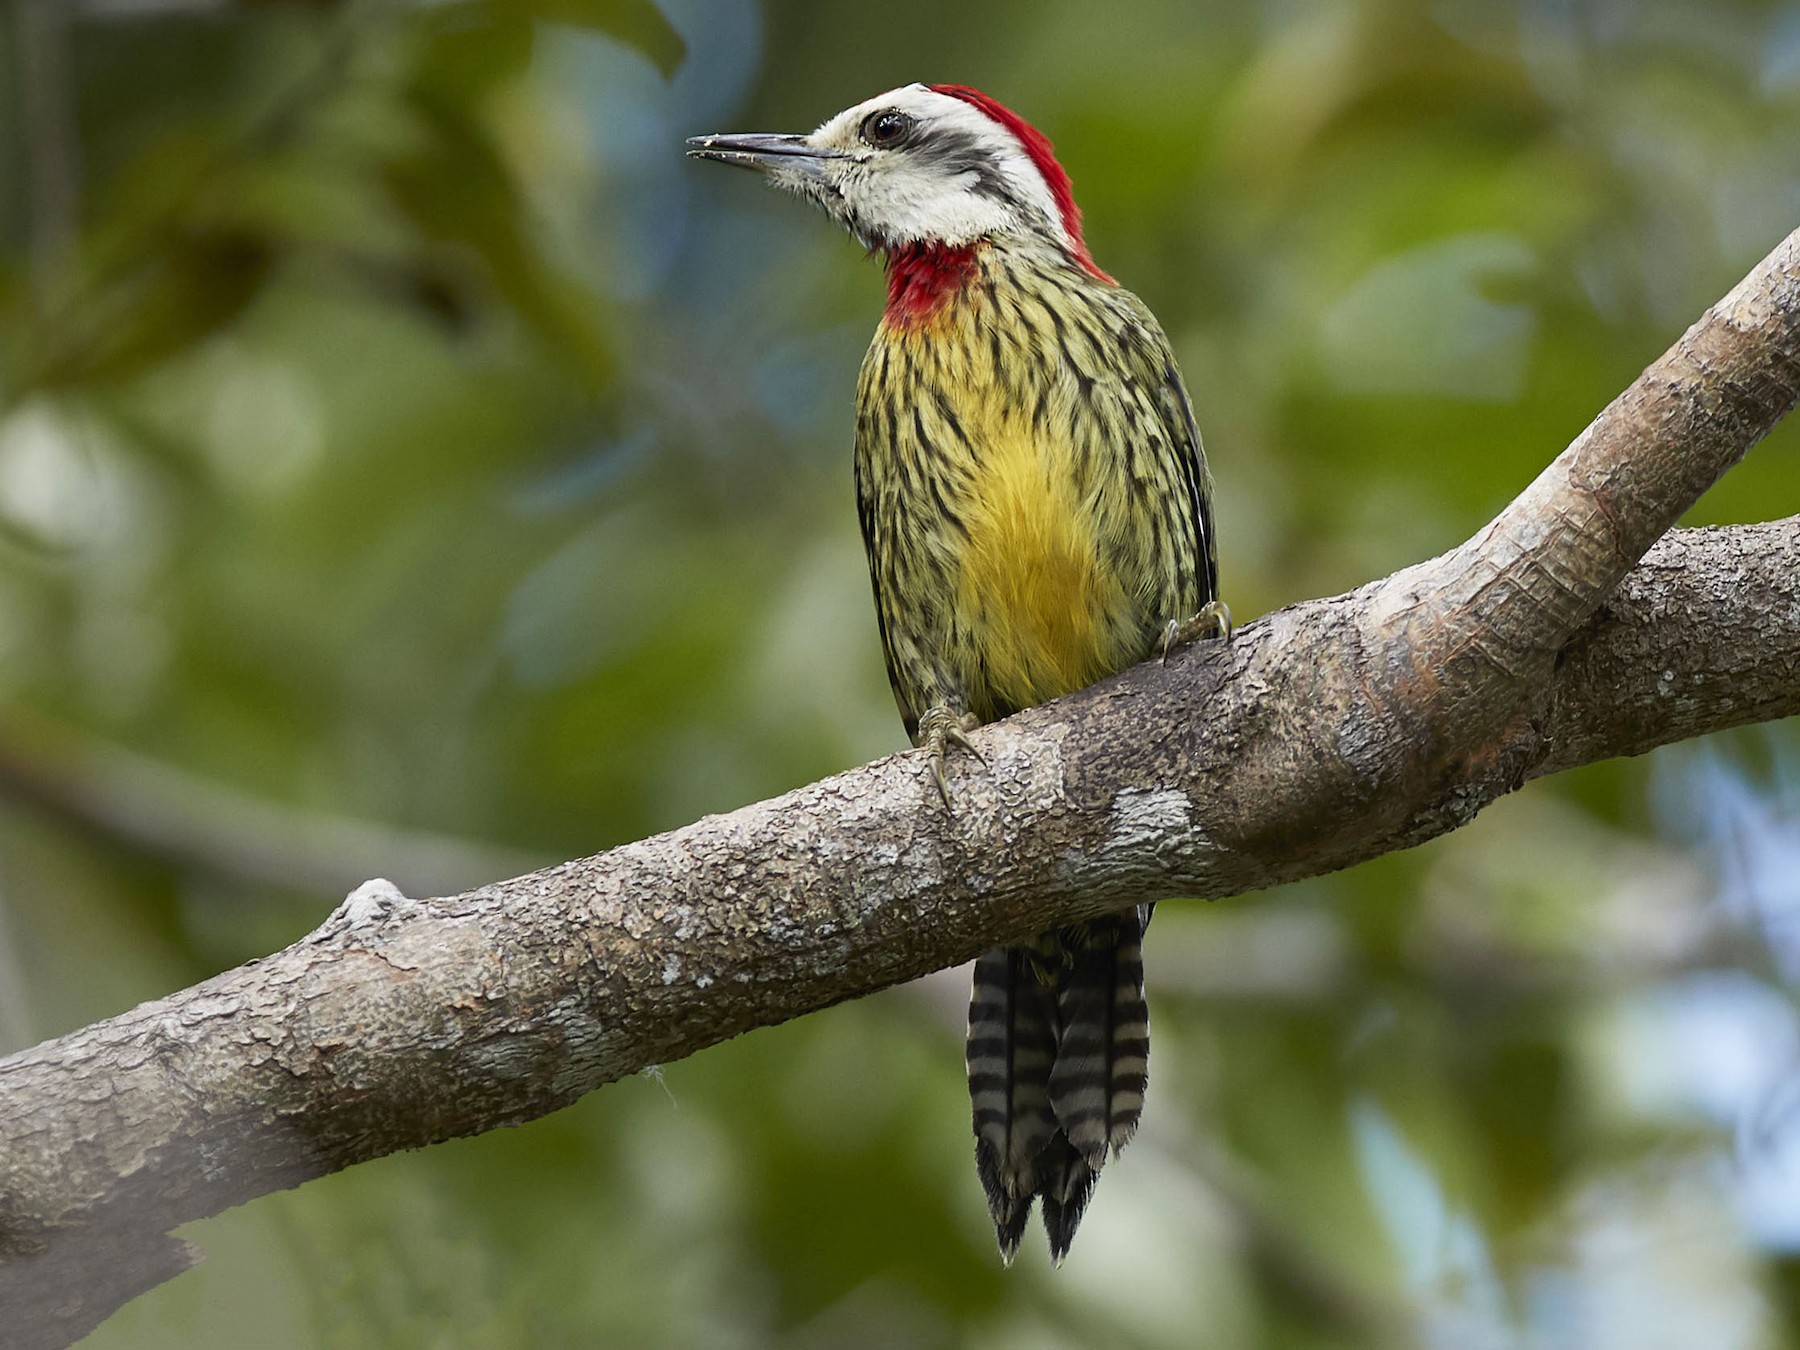 Cuban Green Woodpecker - Arturo Kirkconnell Jr